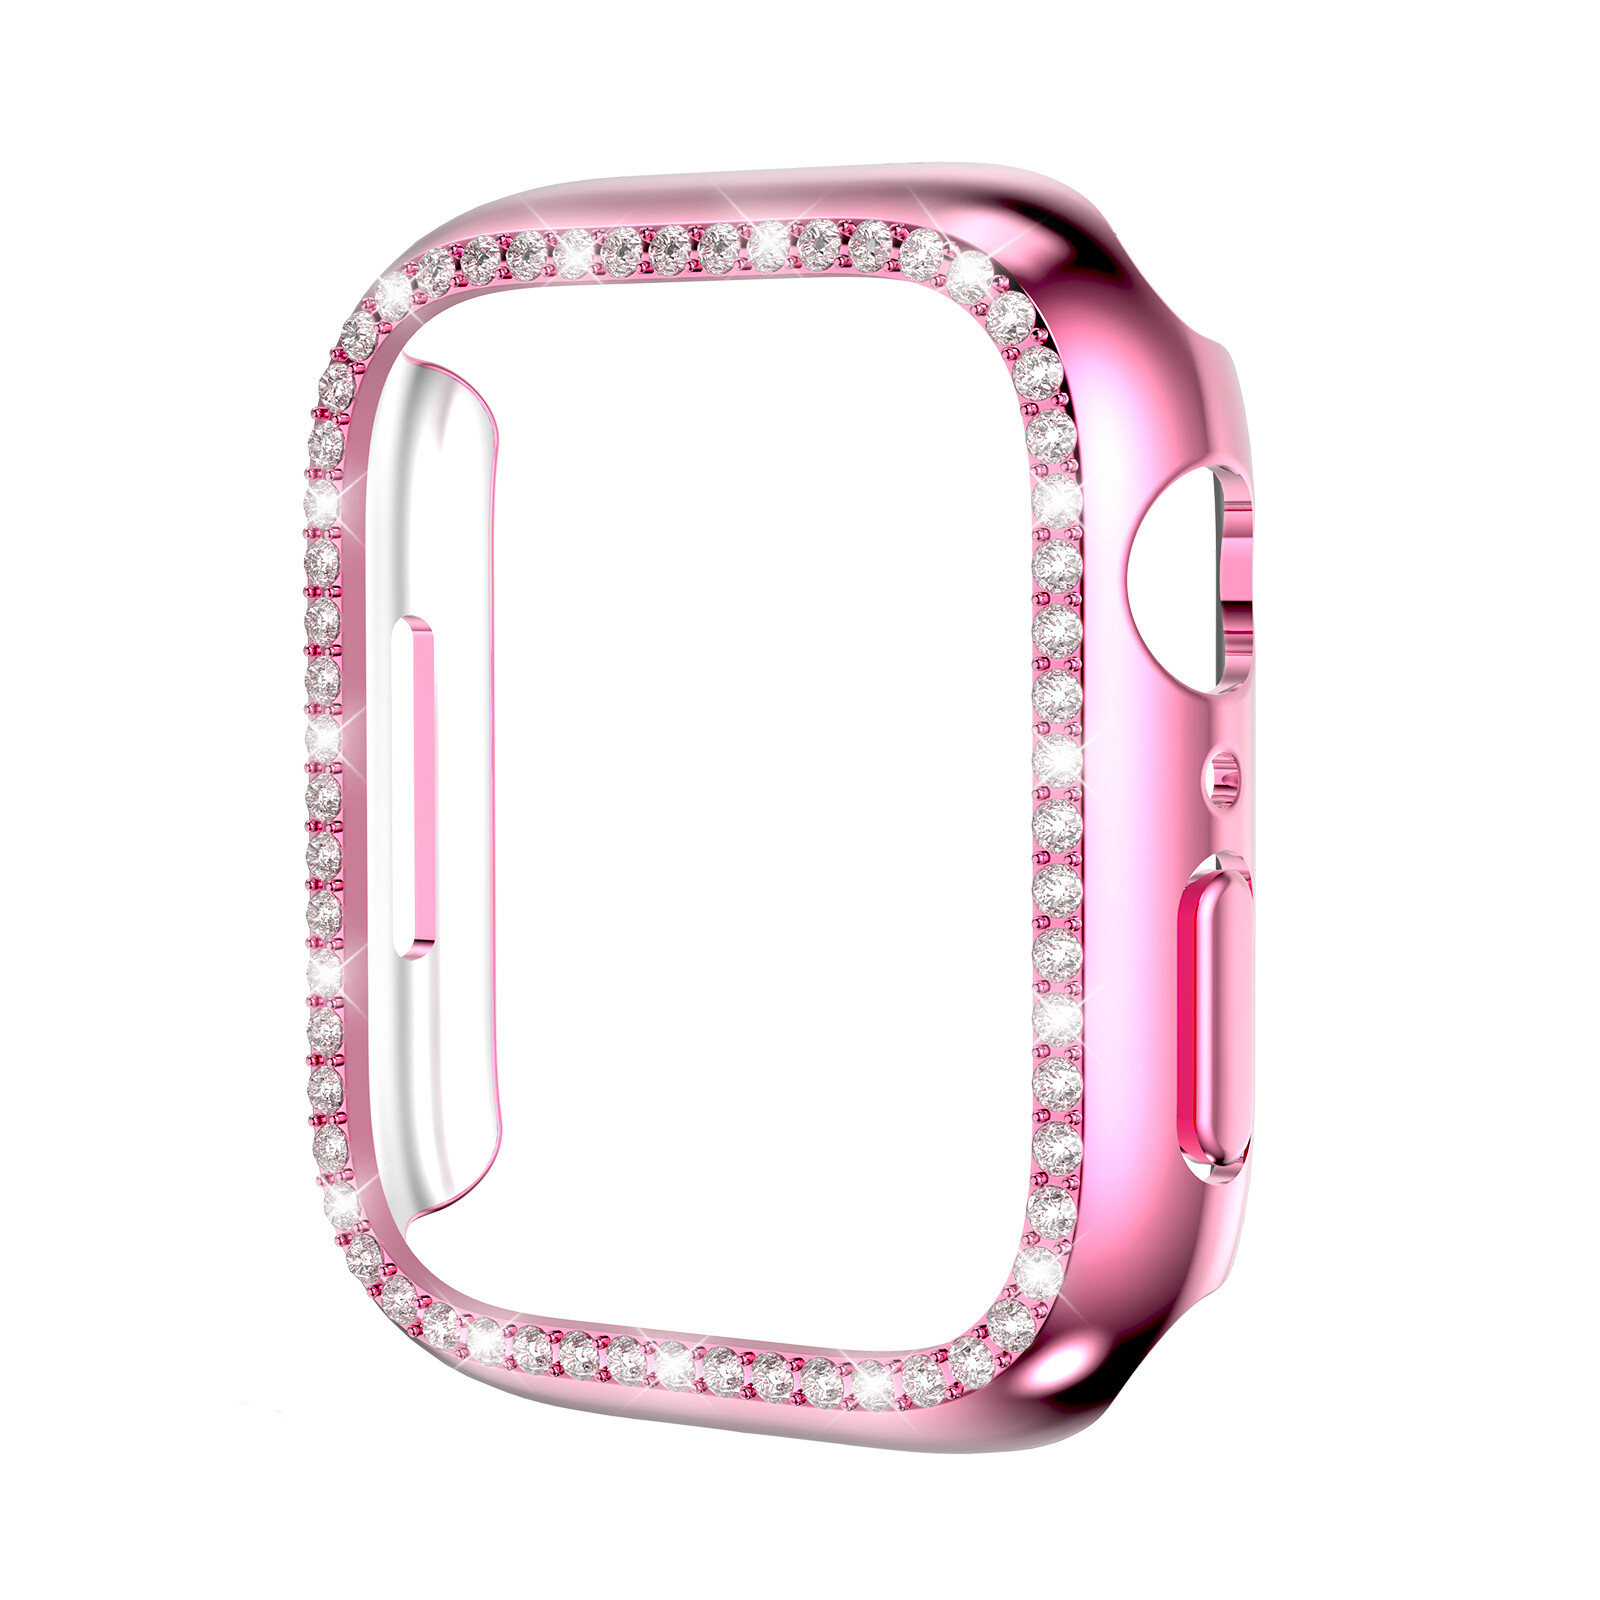 KNY Apple Watch 44 MM in Kenar Tal Renkli Gard Kapak